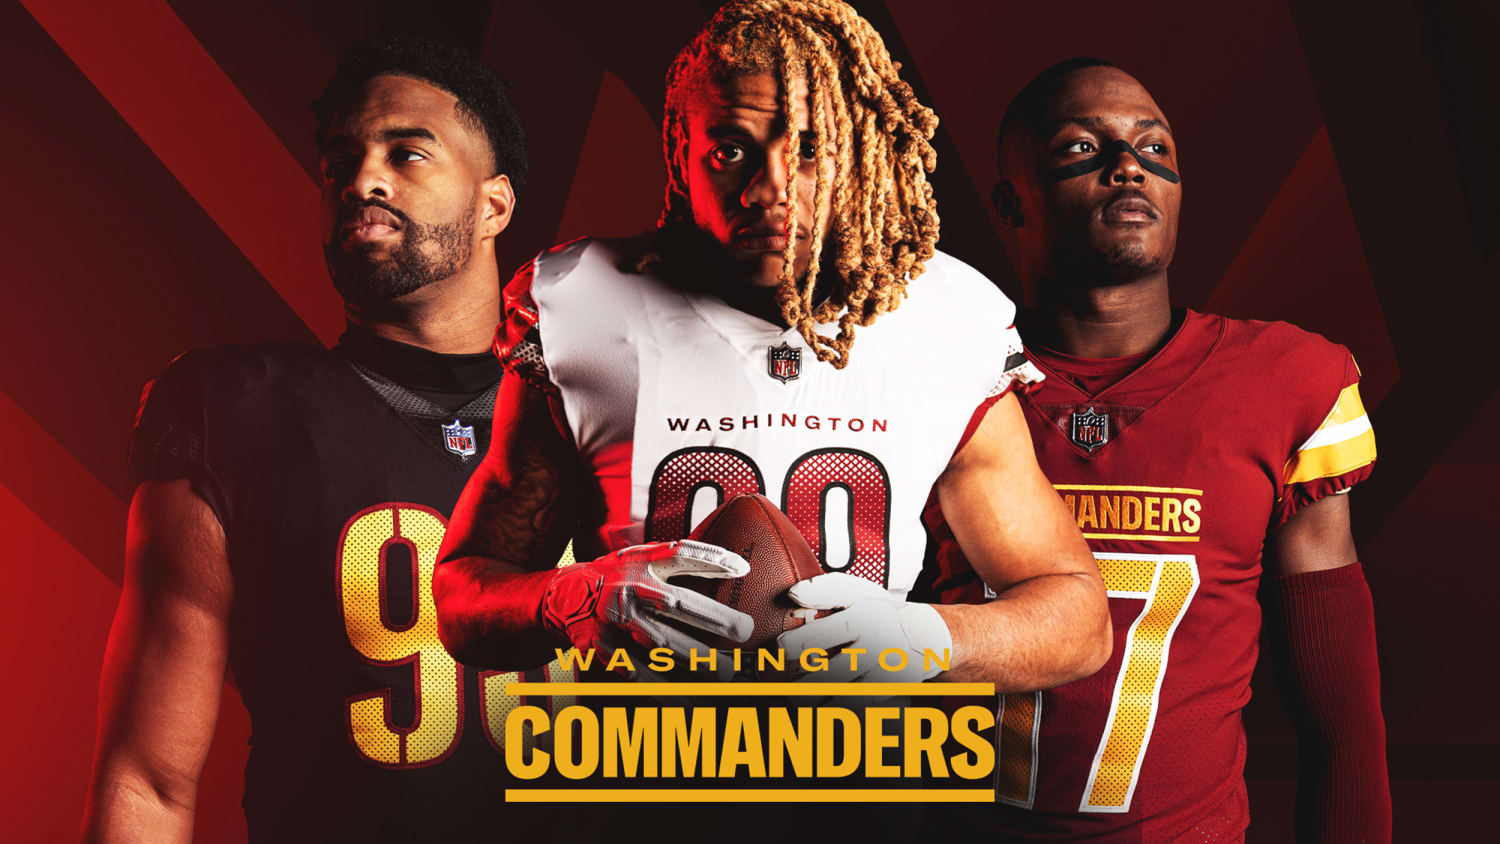 new washington commanders jerseys